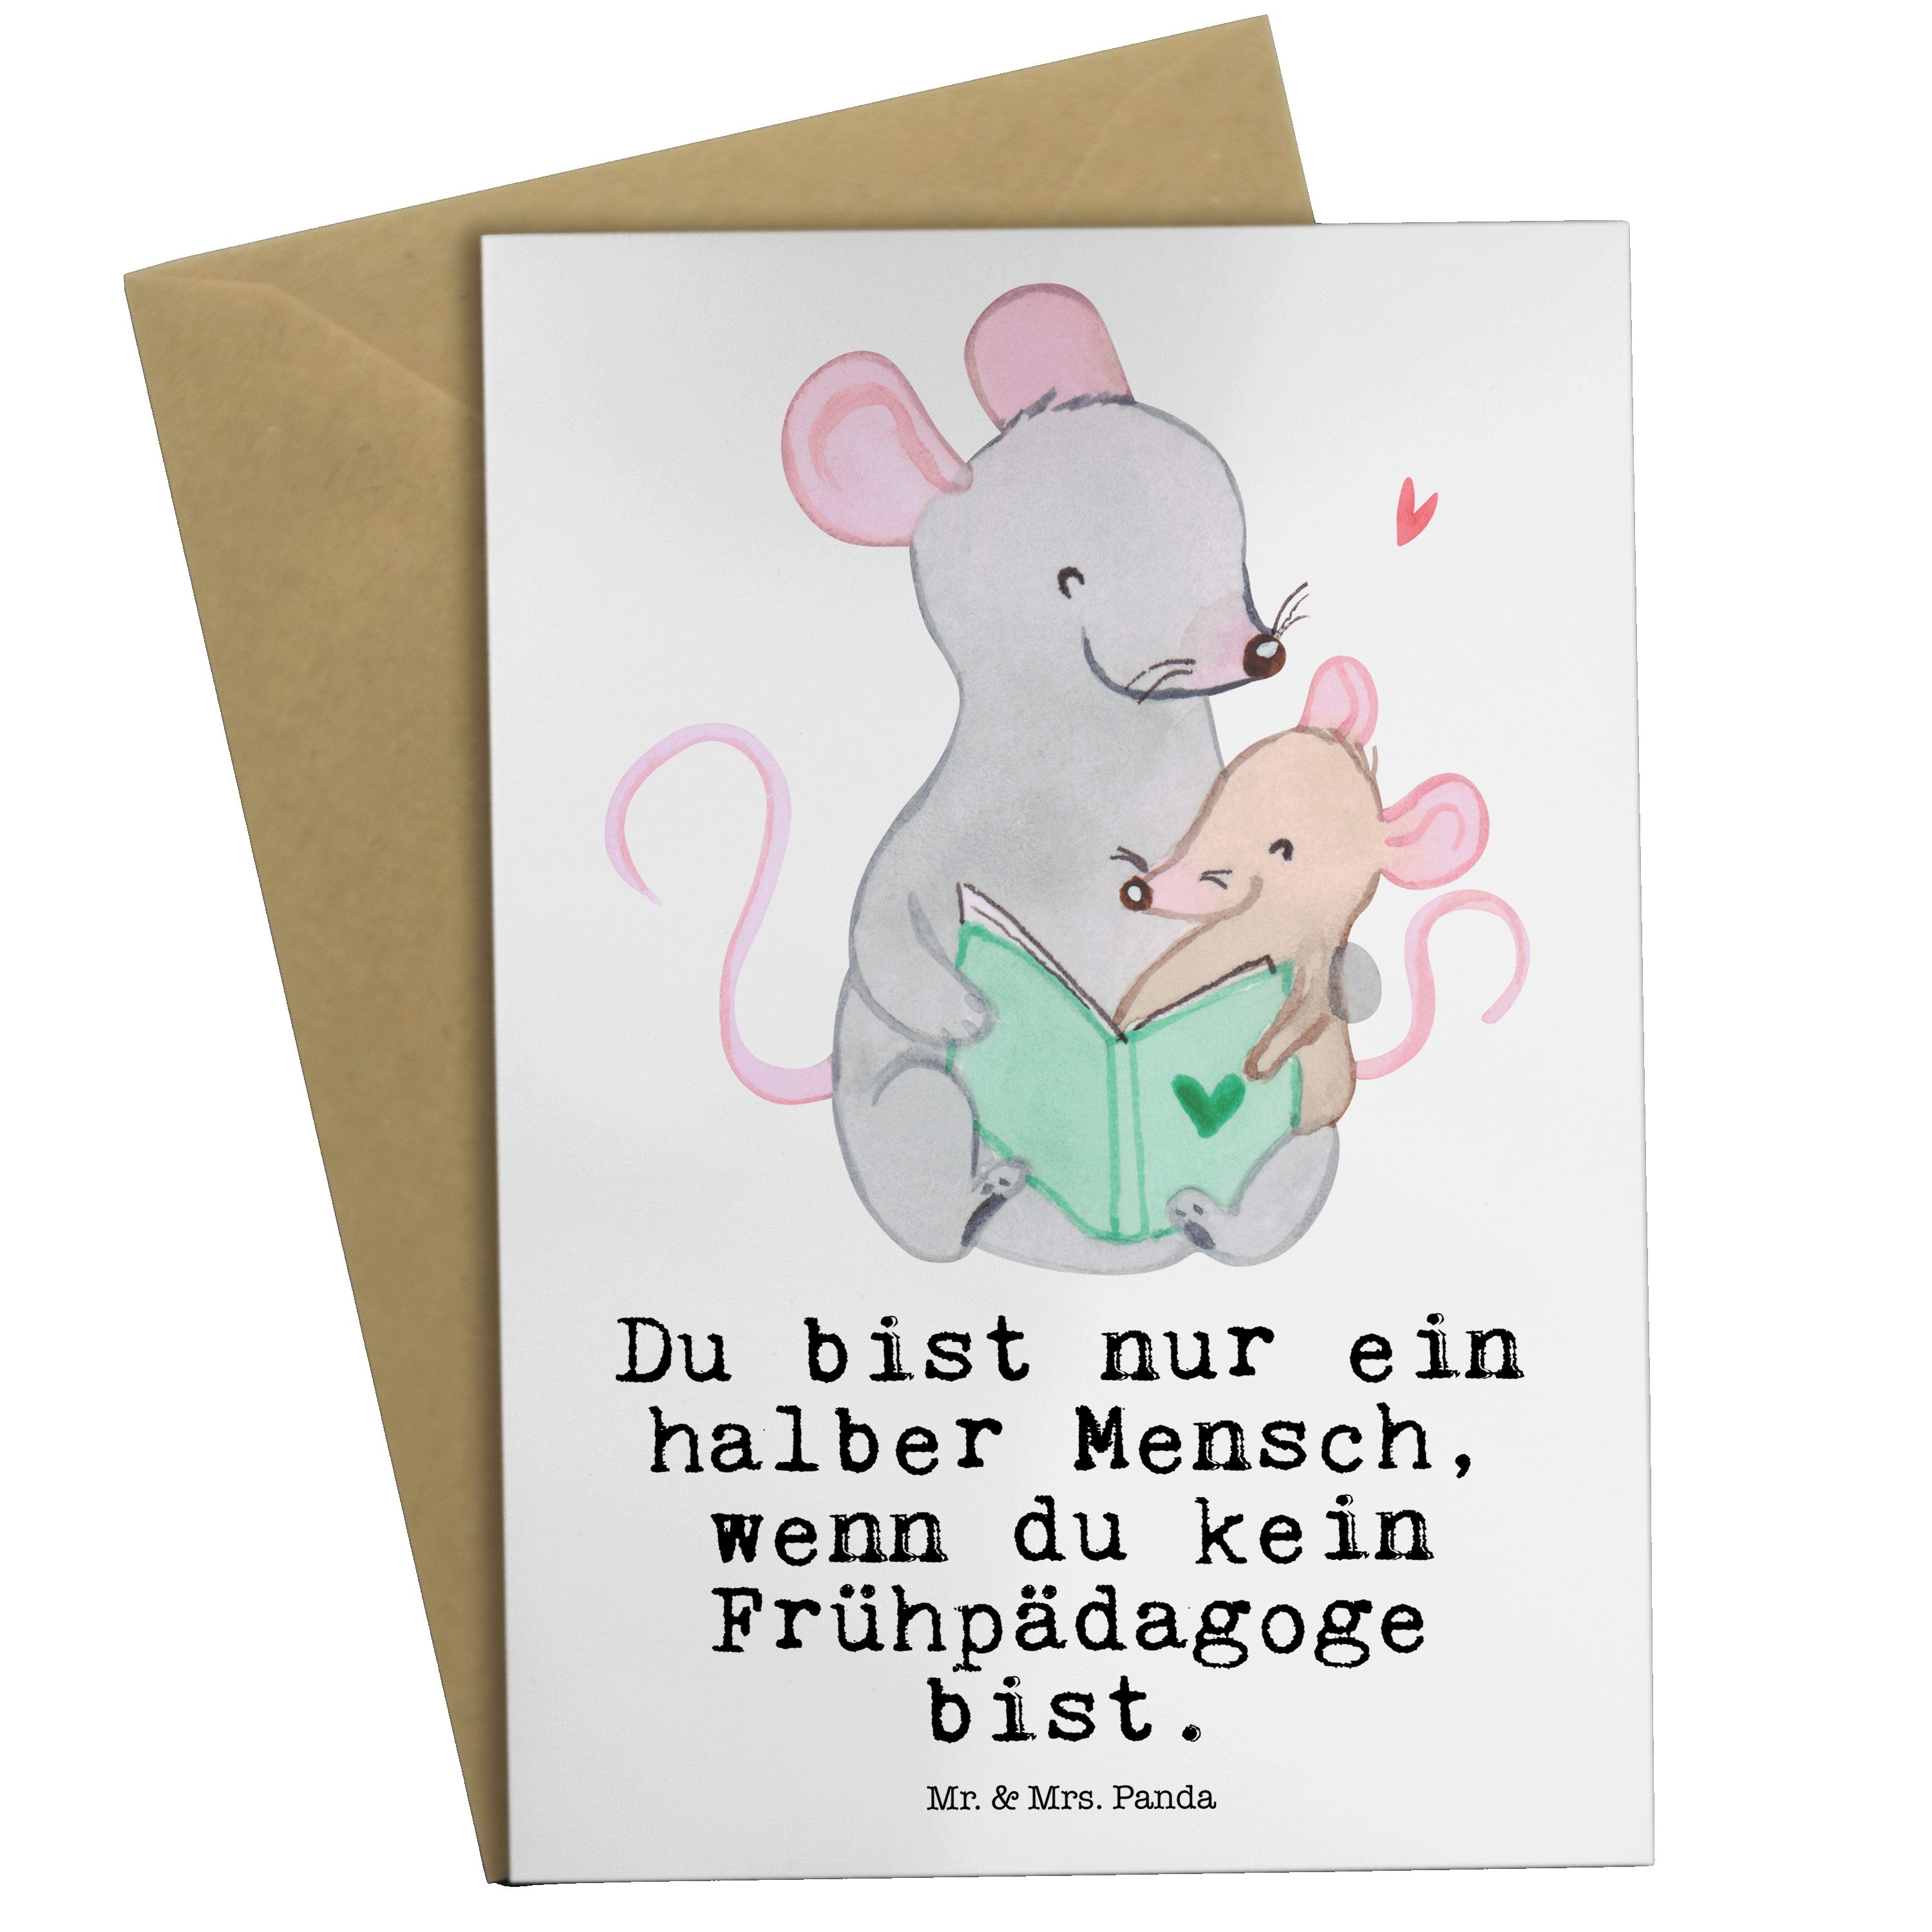 Mr. & Mrs. Panda Grußkarte Frühpädagoge mit Herz - Weiß - Geschenk, Klappkarte, Dankeschön, Früh